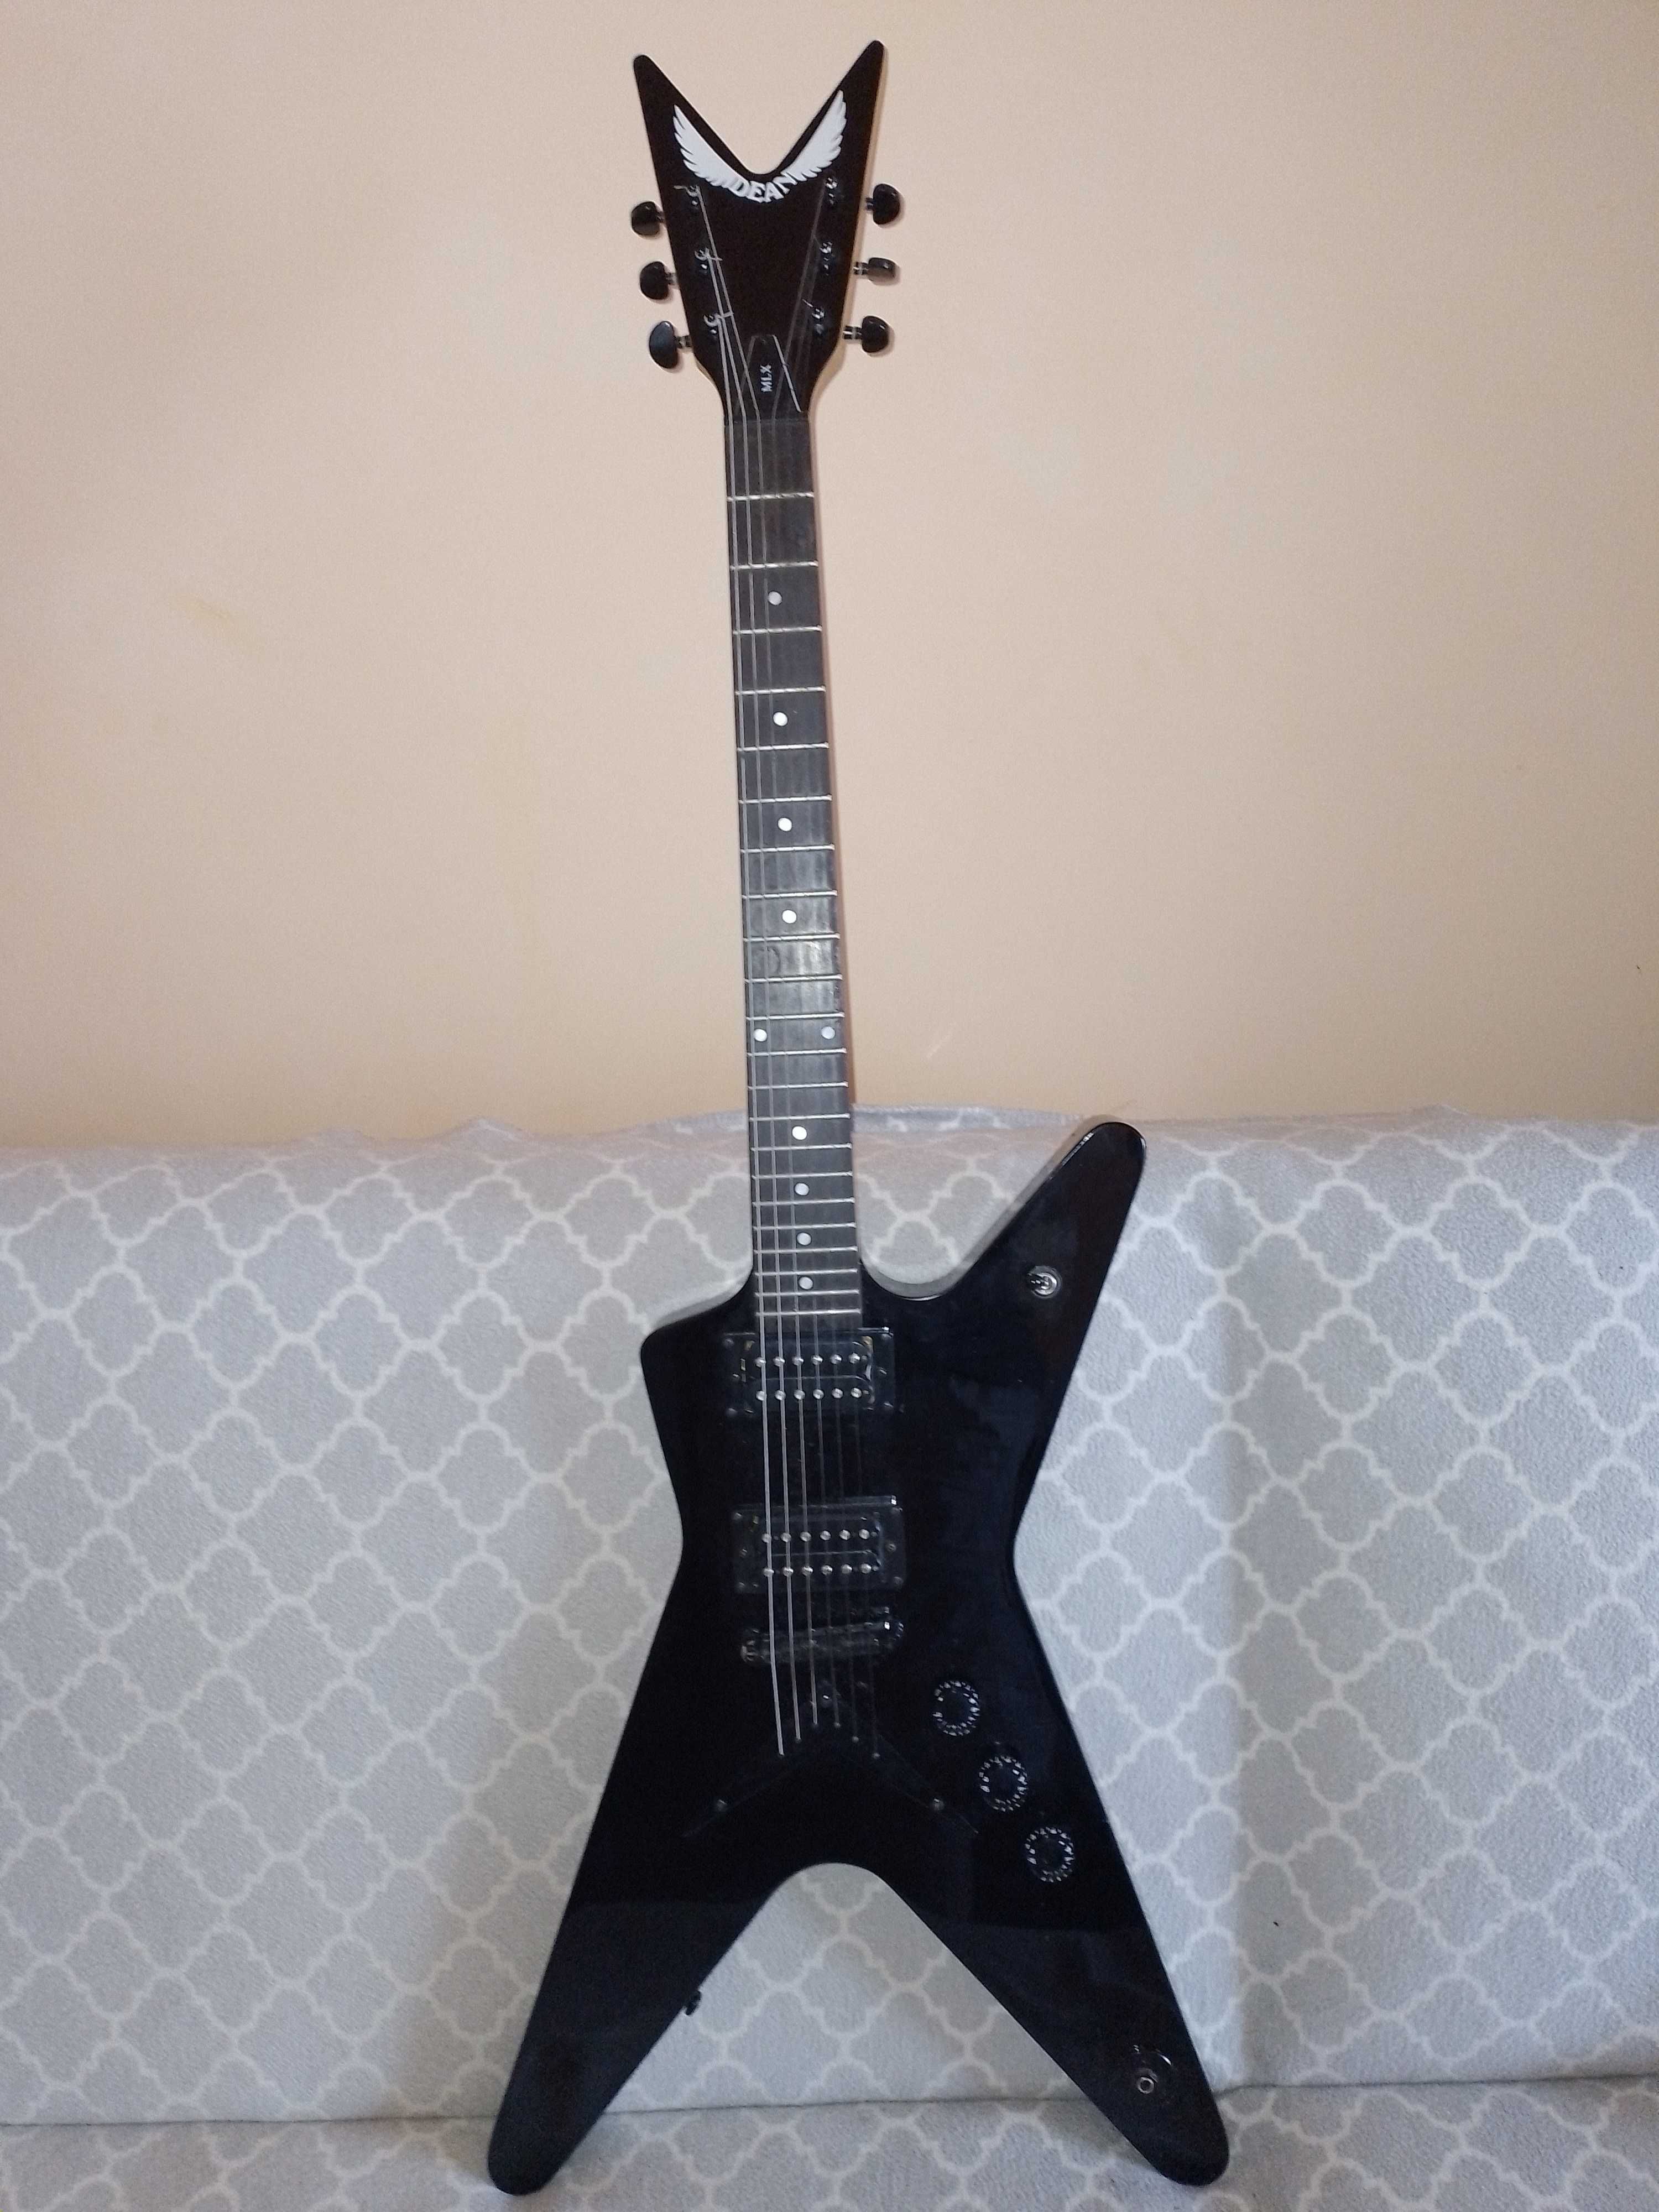 Gitara elektryczna Dean mlx czarna + futerał oraz wzmacniacz JOYO D-15